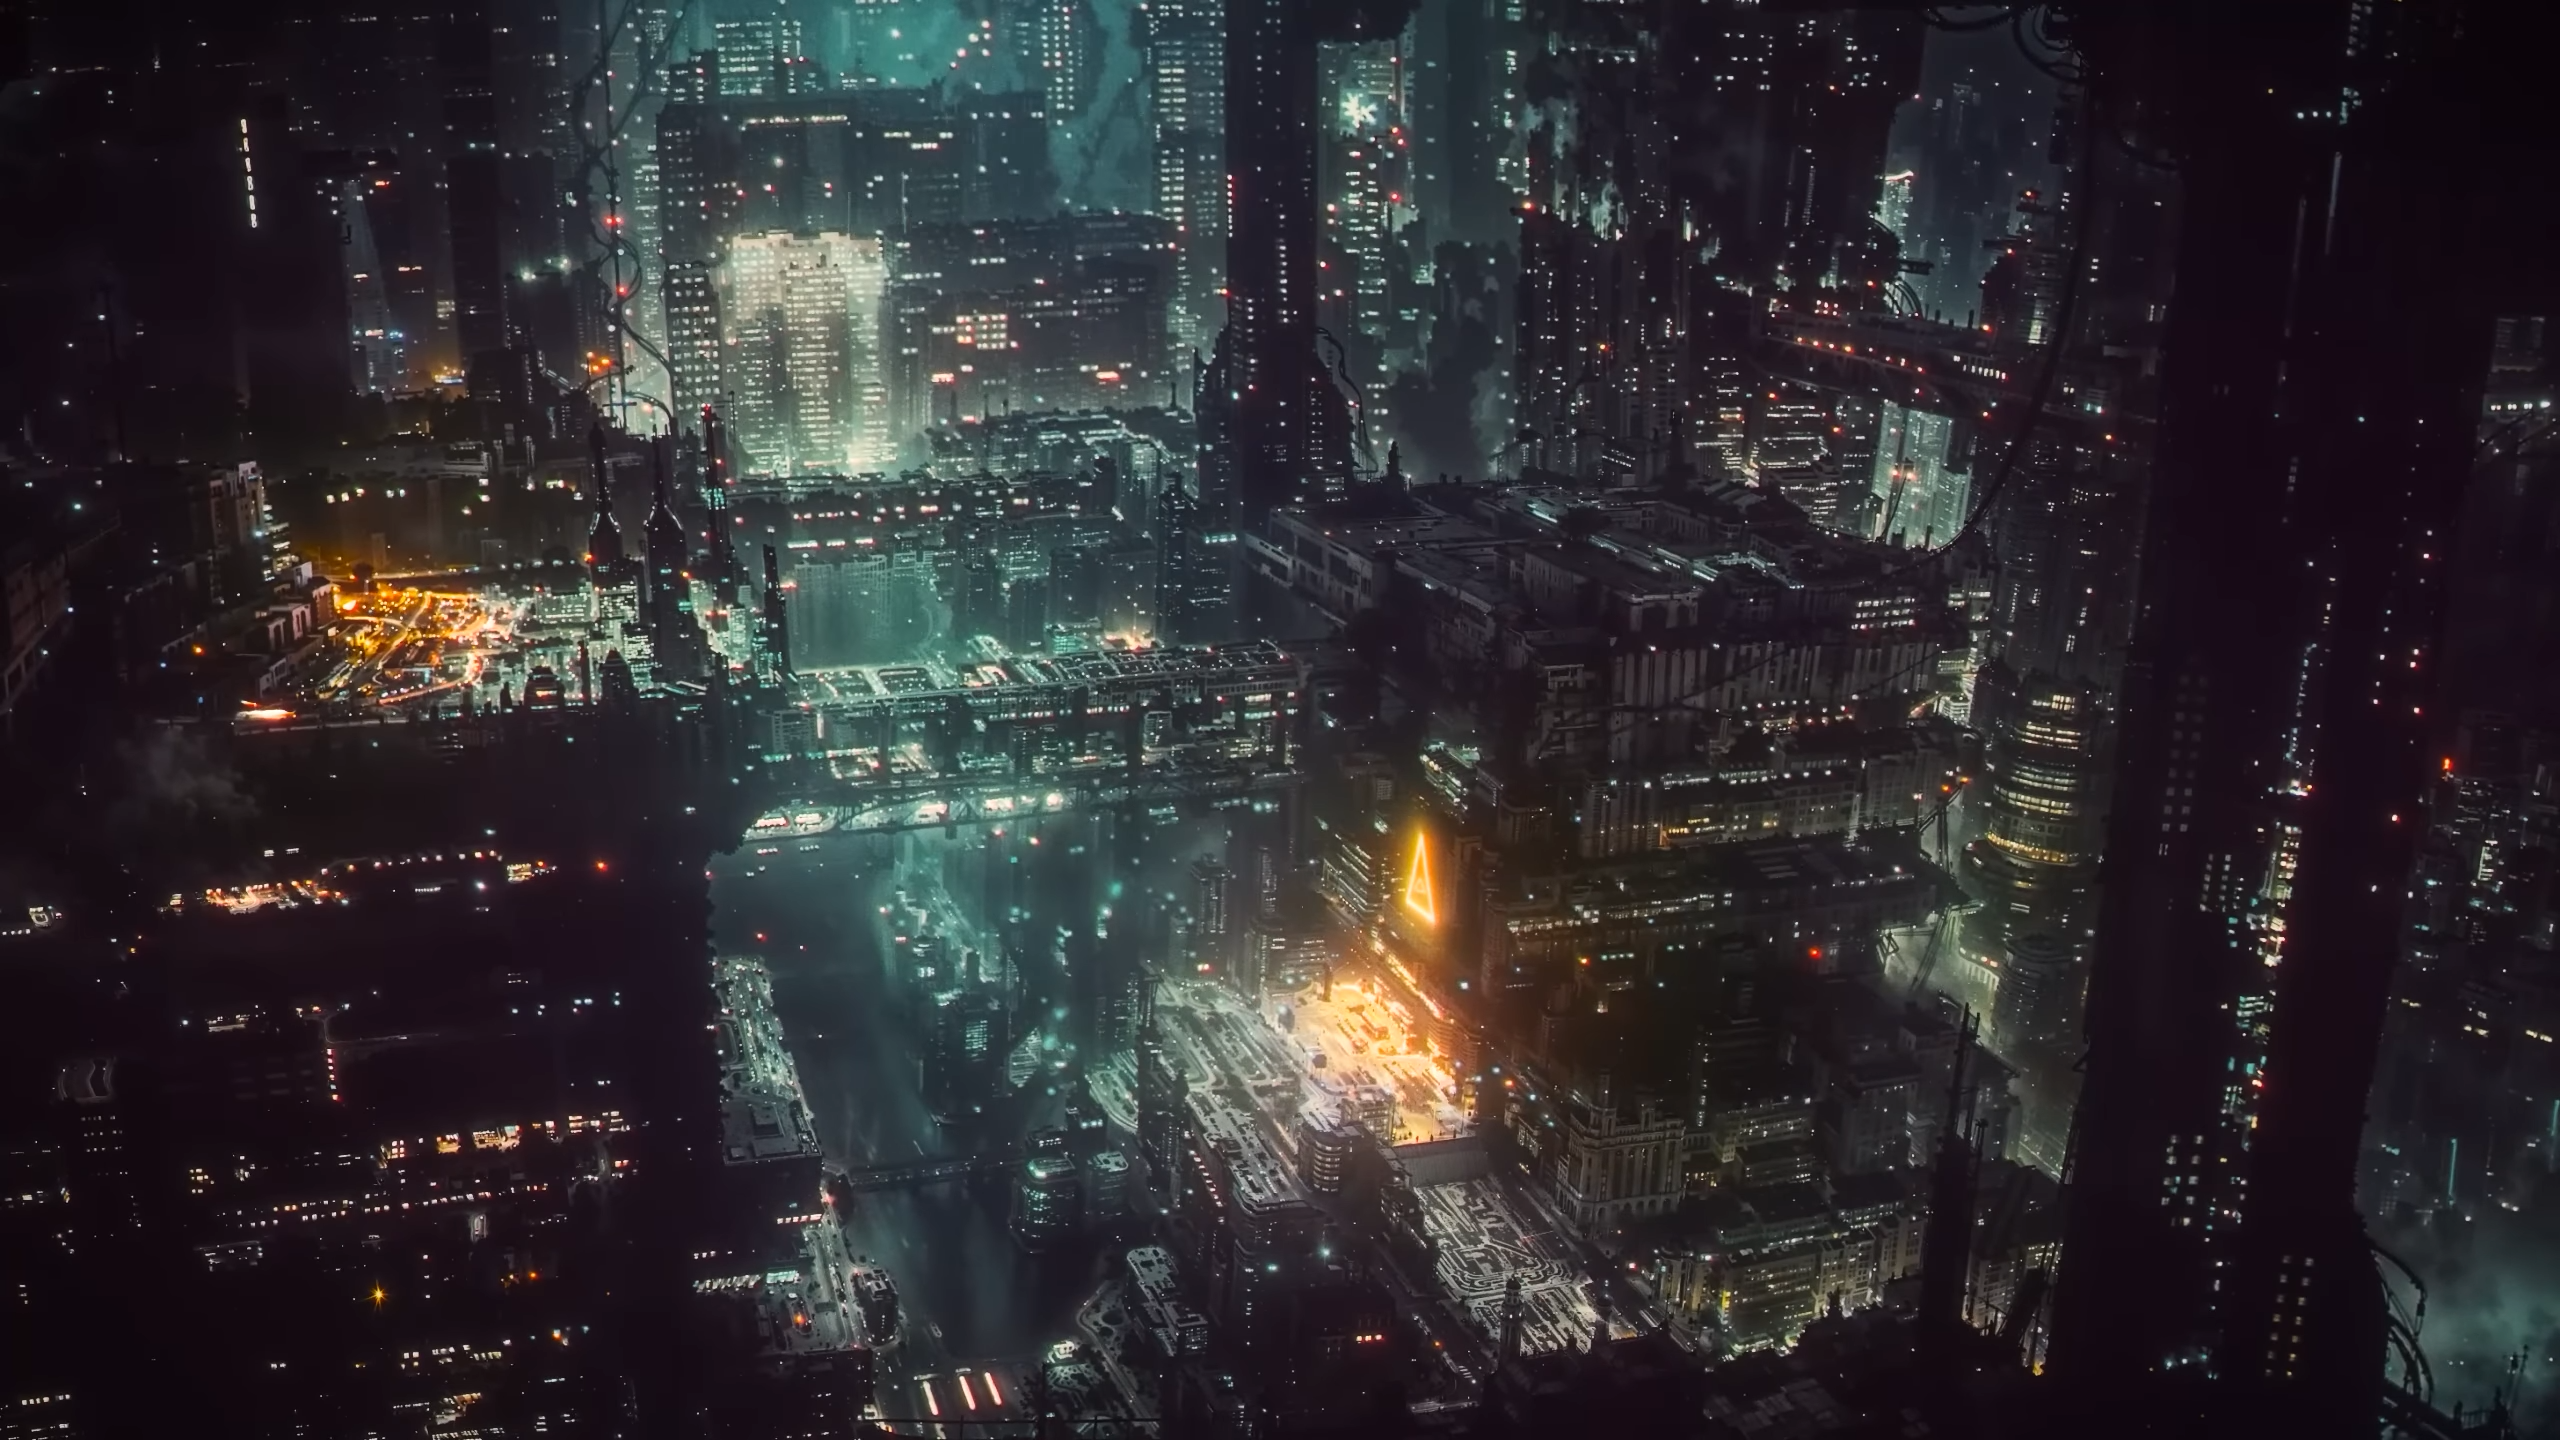 Cyberpunk Futuristic City NightScene Neon Skyscraper Dystopian Architecture Aerial View Science Fict 2560x1440